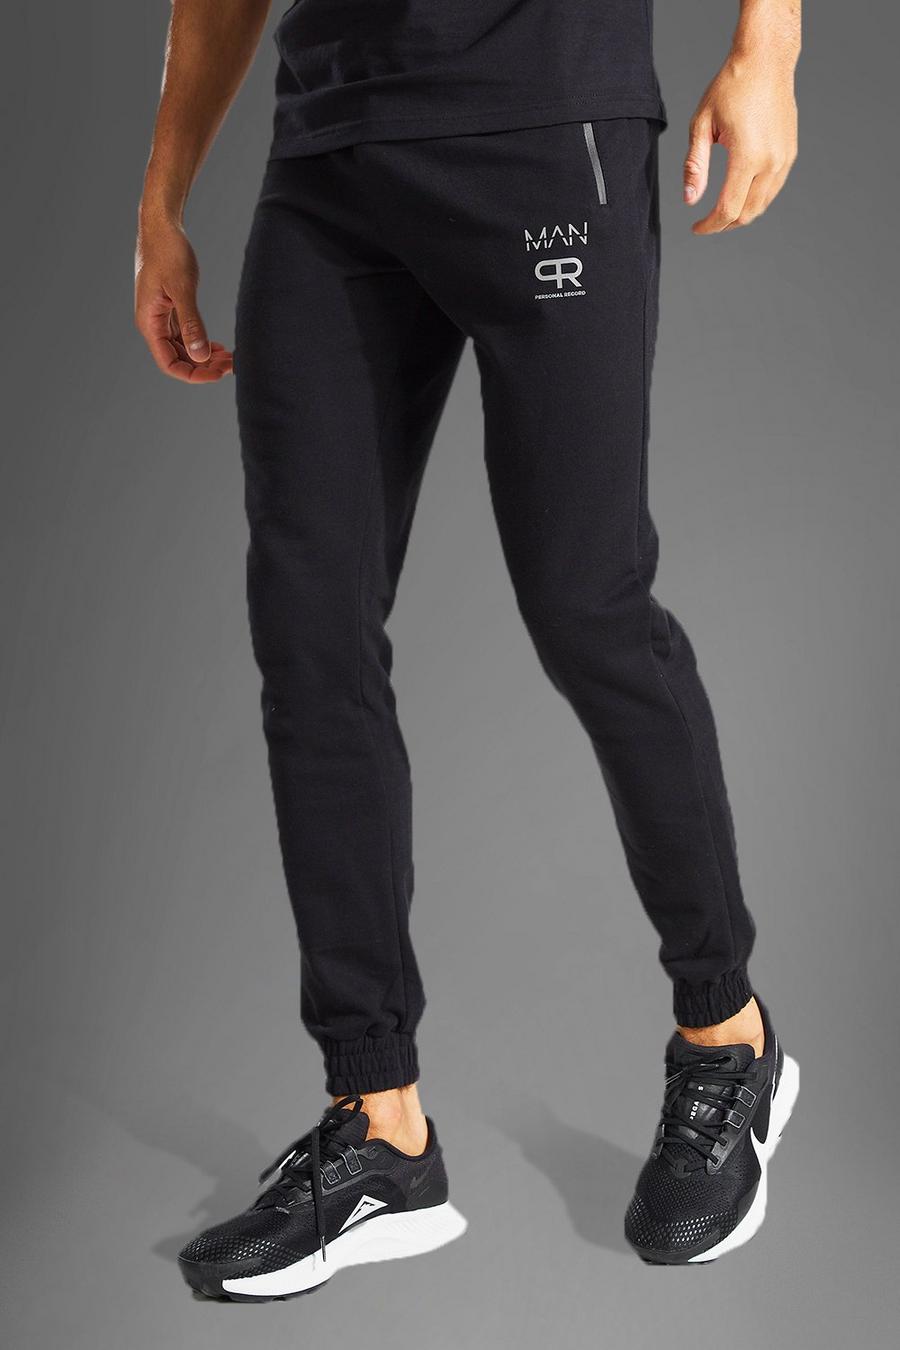 Pantalón deportivo MAN Active con estampado reflectante, Black negro